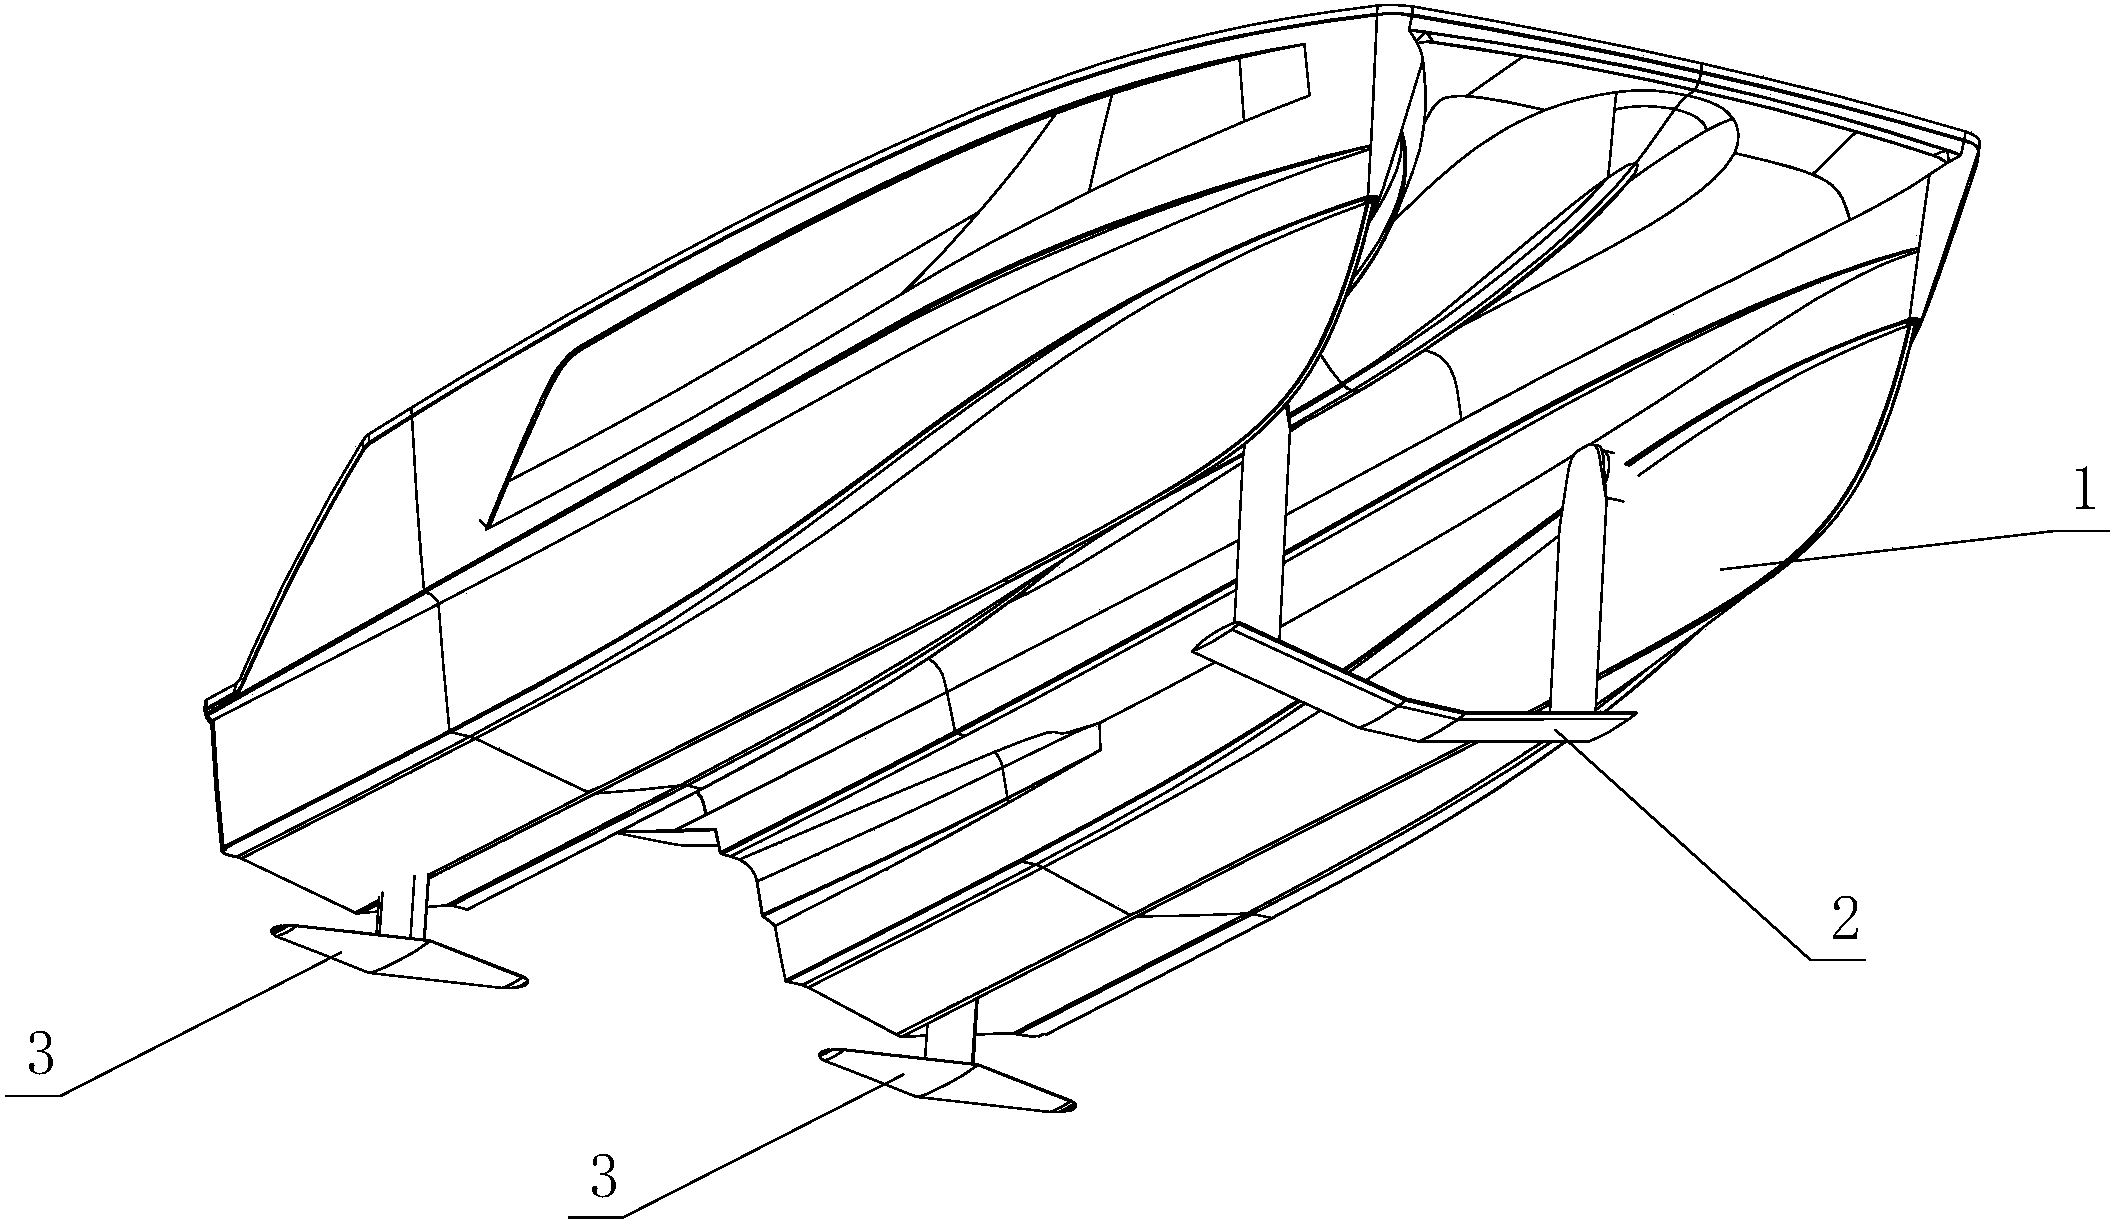 水翼船水翼结构图纸图片